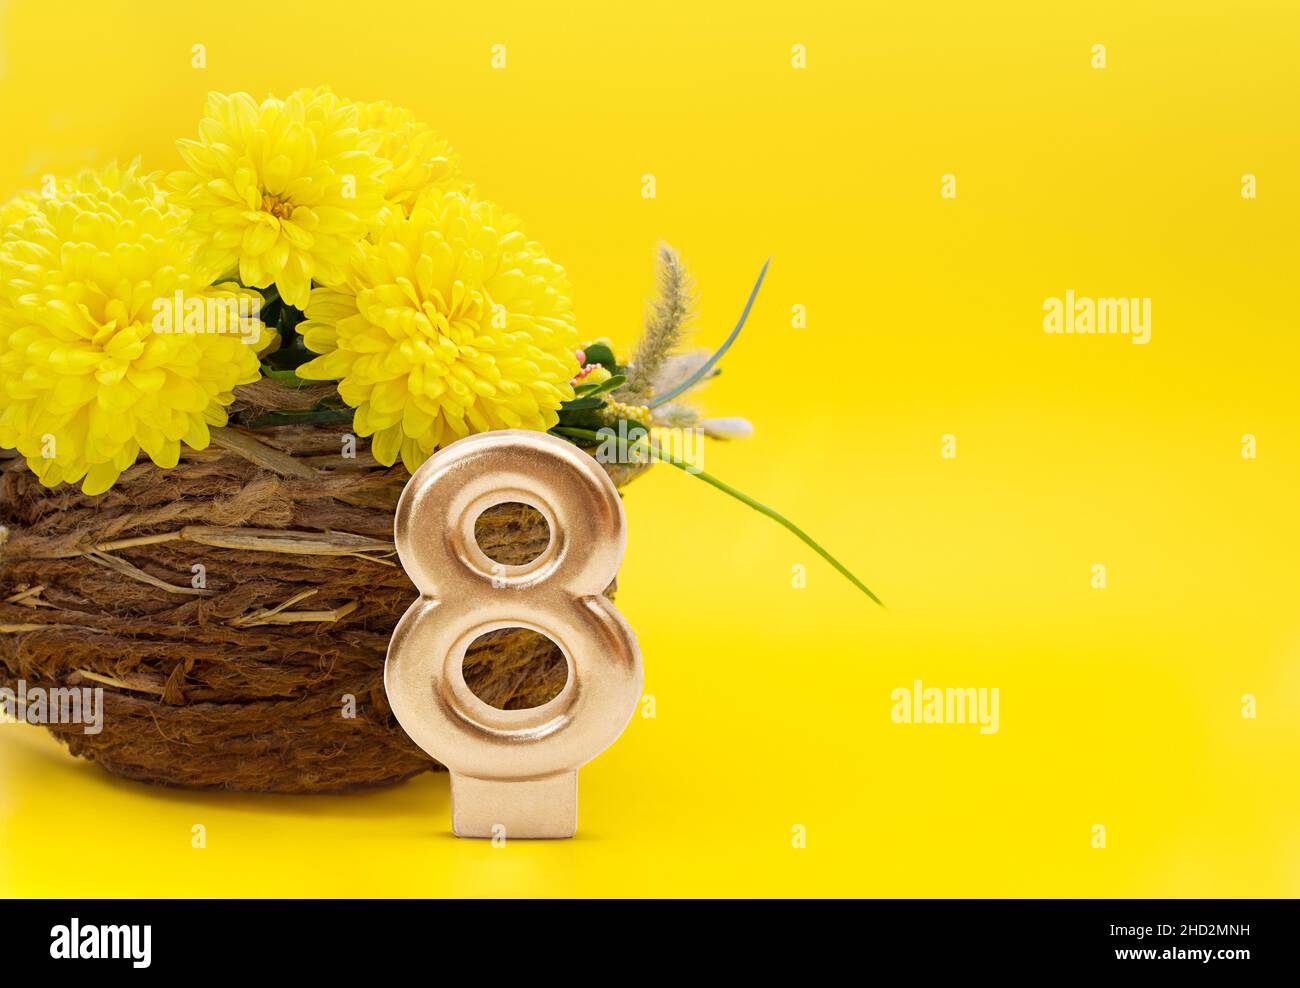 Strauß Chrysanthemen in einer Jutevase und Nummer 8 auf gelbem Grund. Geschenk zum Internationalen Frauentag, 8. März, Geburtstag. Speicherplatz kopieren Stockfoto